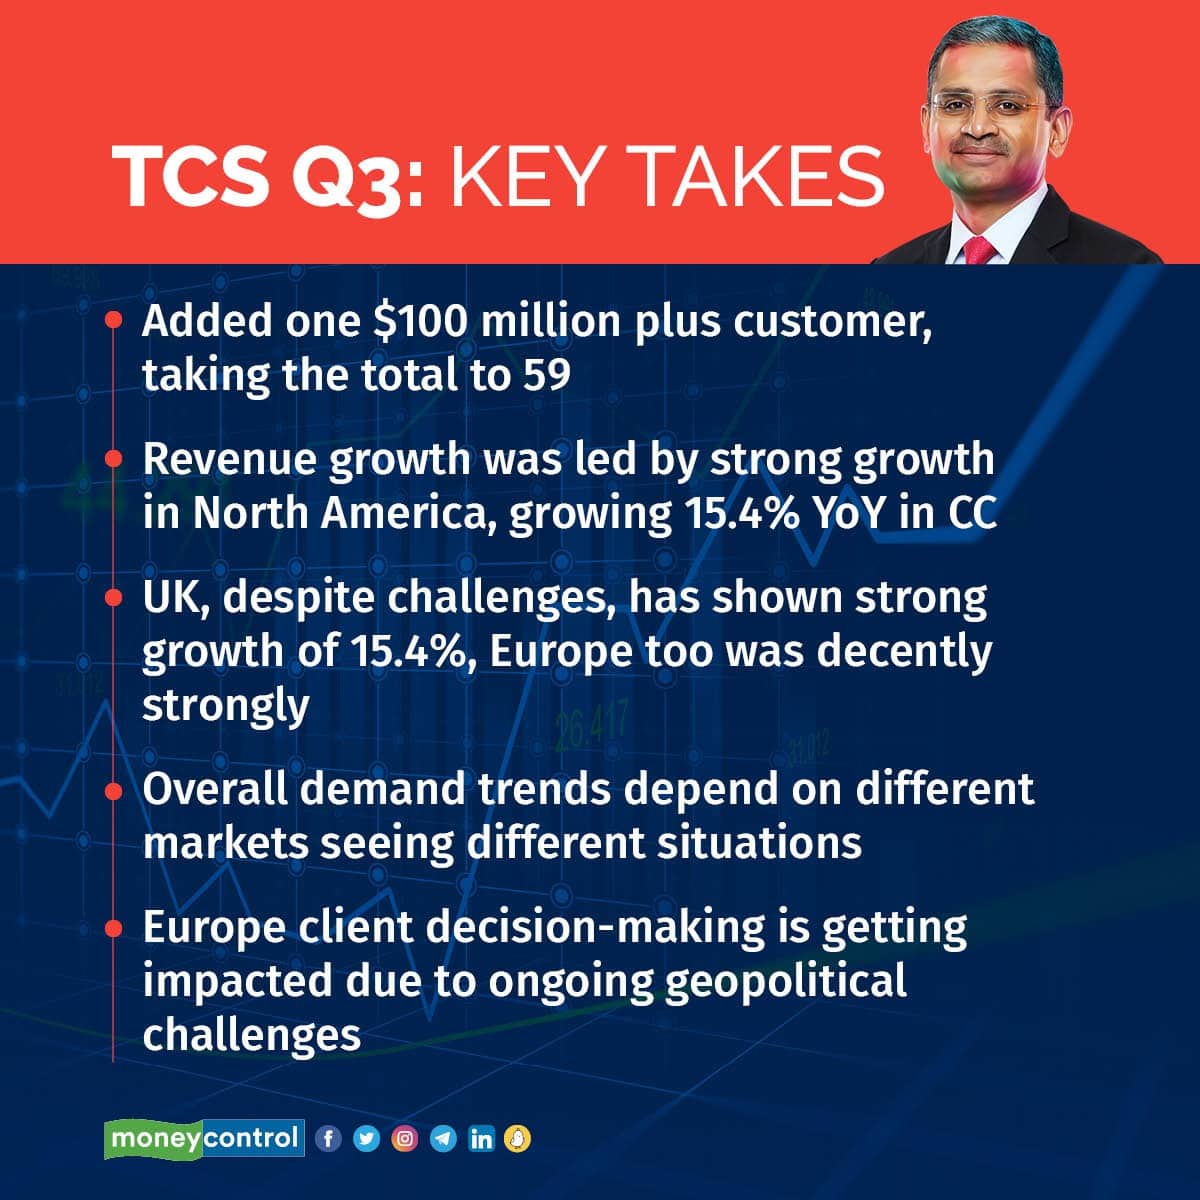 TCS Q3 Key takes